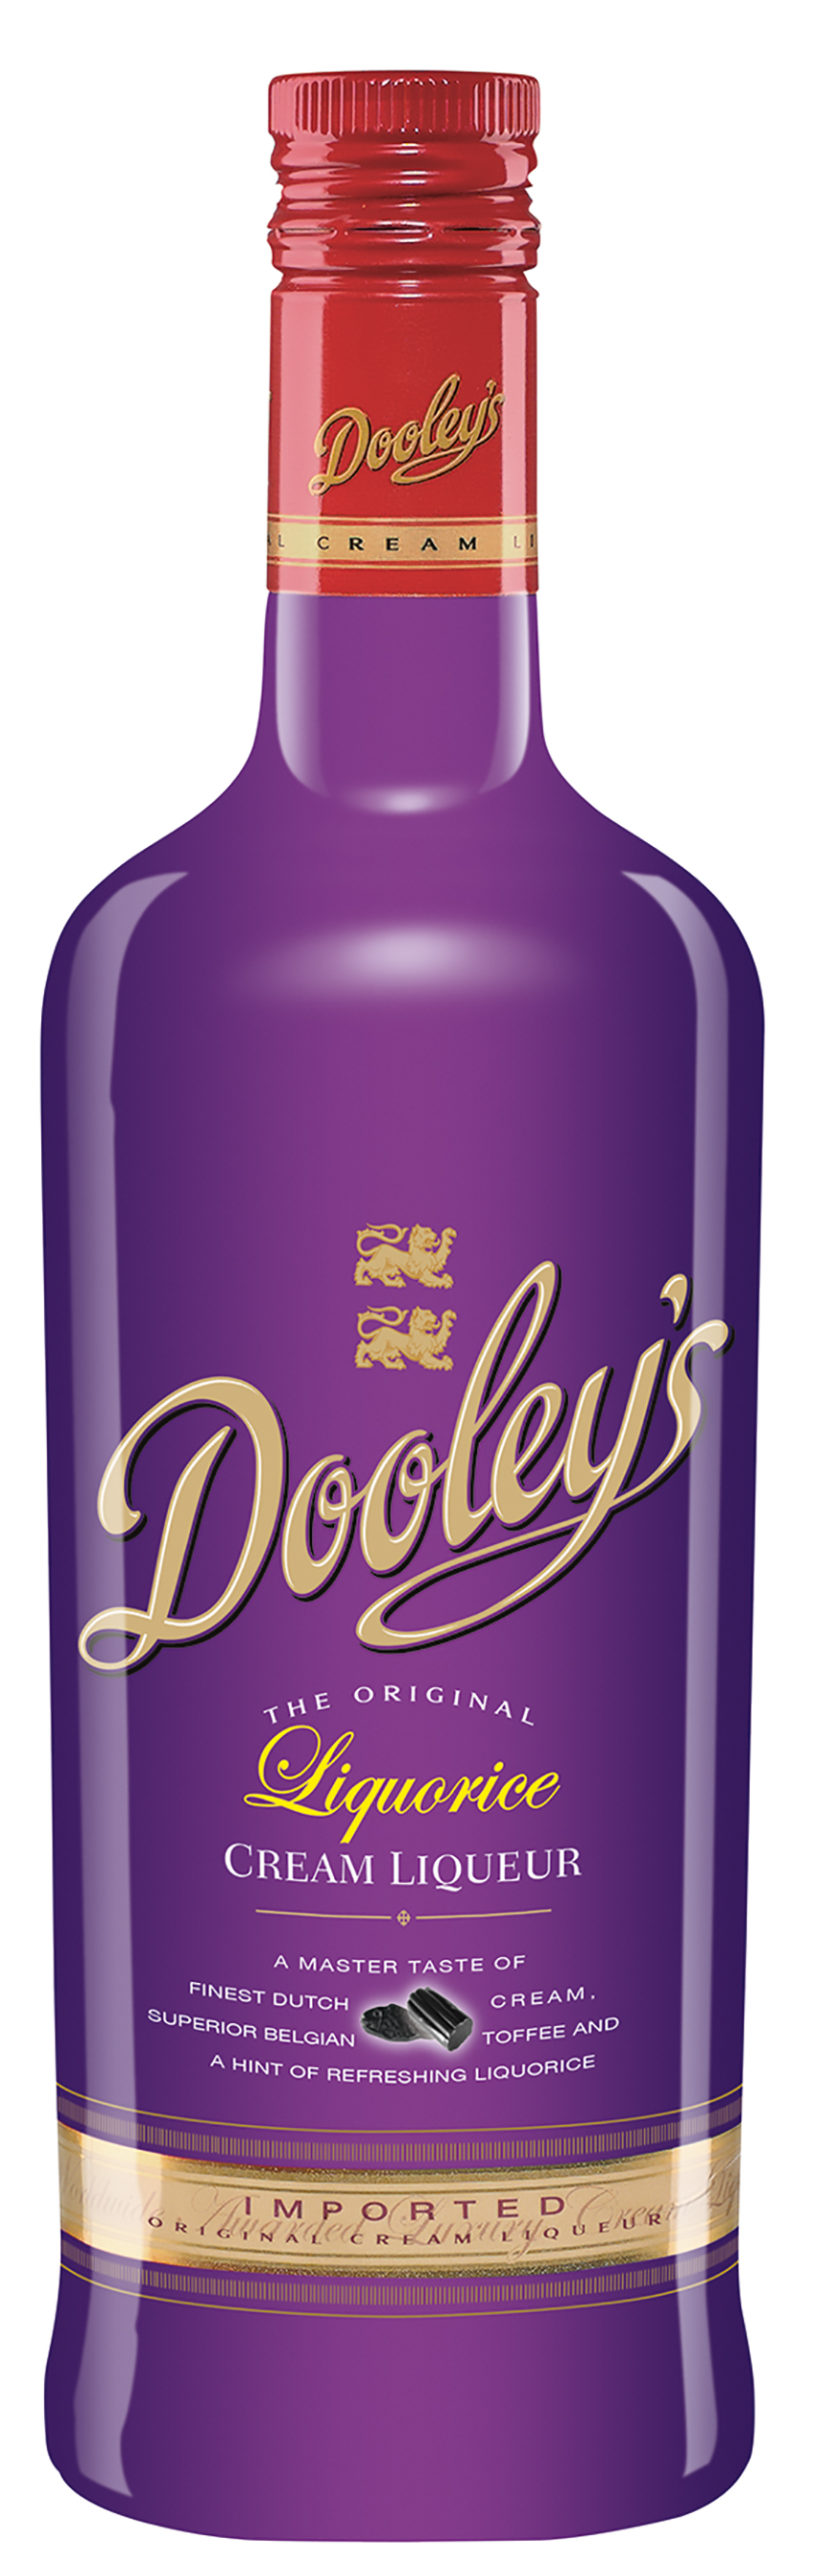 Dooley’s Liquorice Cream